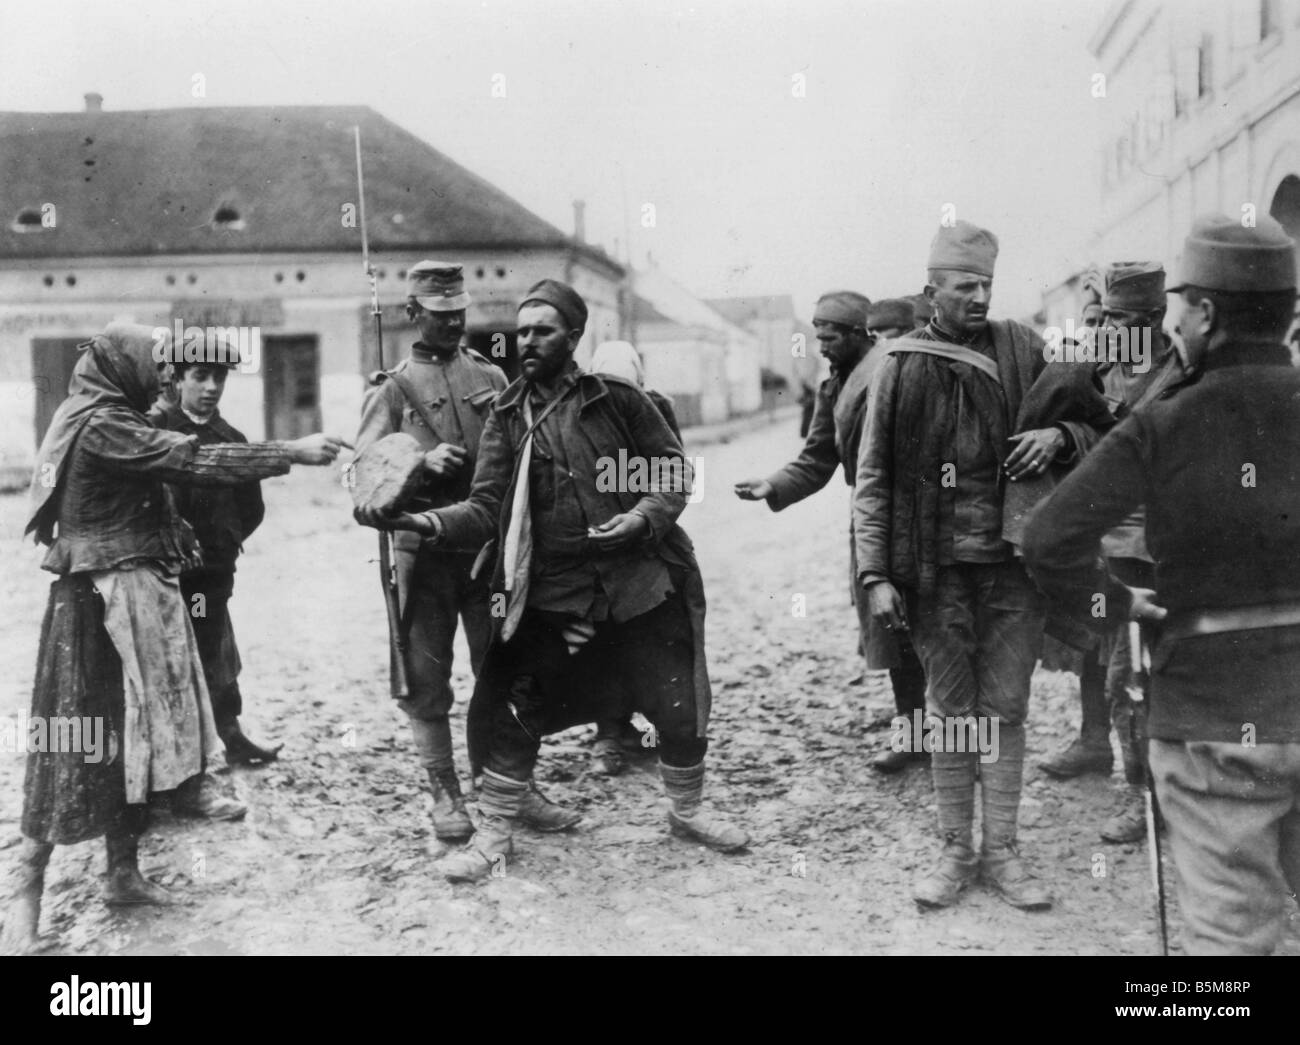 2 g55 K1 1916 19 alimentando il serbo POWs WWI 1916 Storia Guerra Mondiale i prigionieri di guerra la guerra nei Balcani il serbo POWs essendo guarde Foto Stock